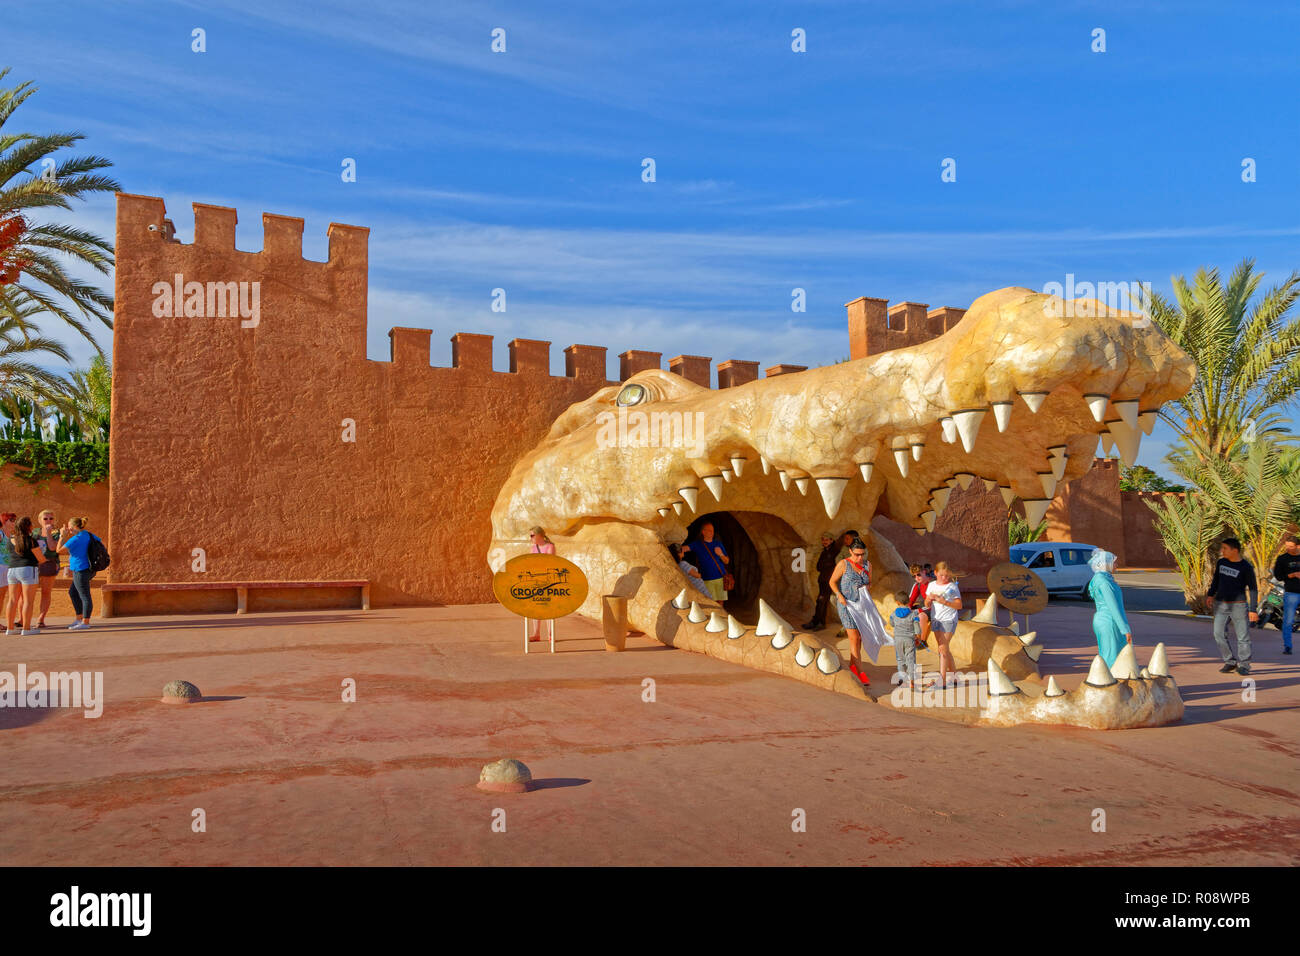 Cabeza de cocodrilo característica como la entrada a Croco Parc, cocodrilo theme park, Agadir, Sur de Marruecos, África occidental. Foto de stock